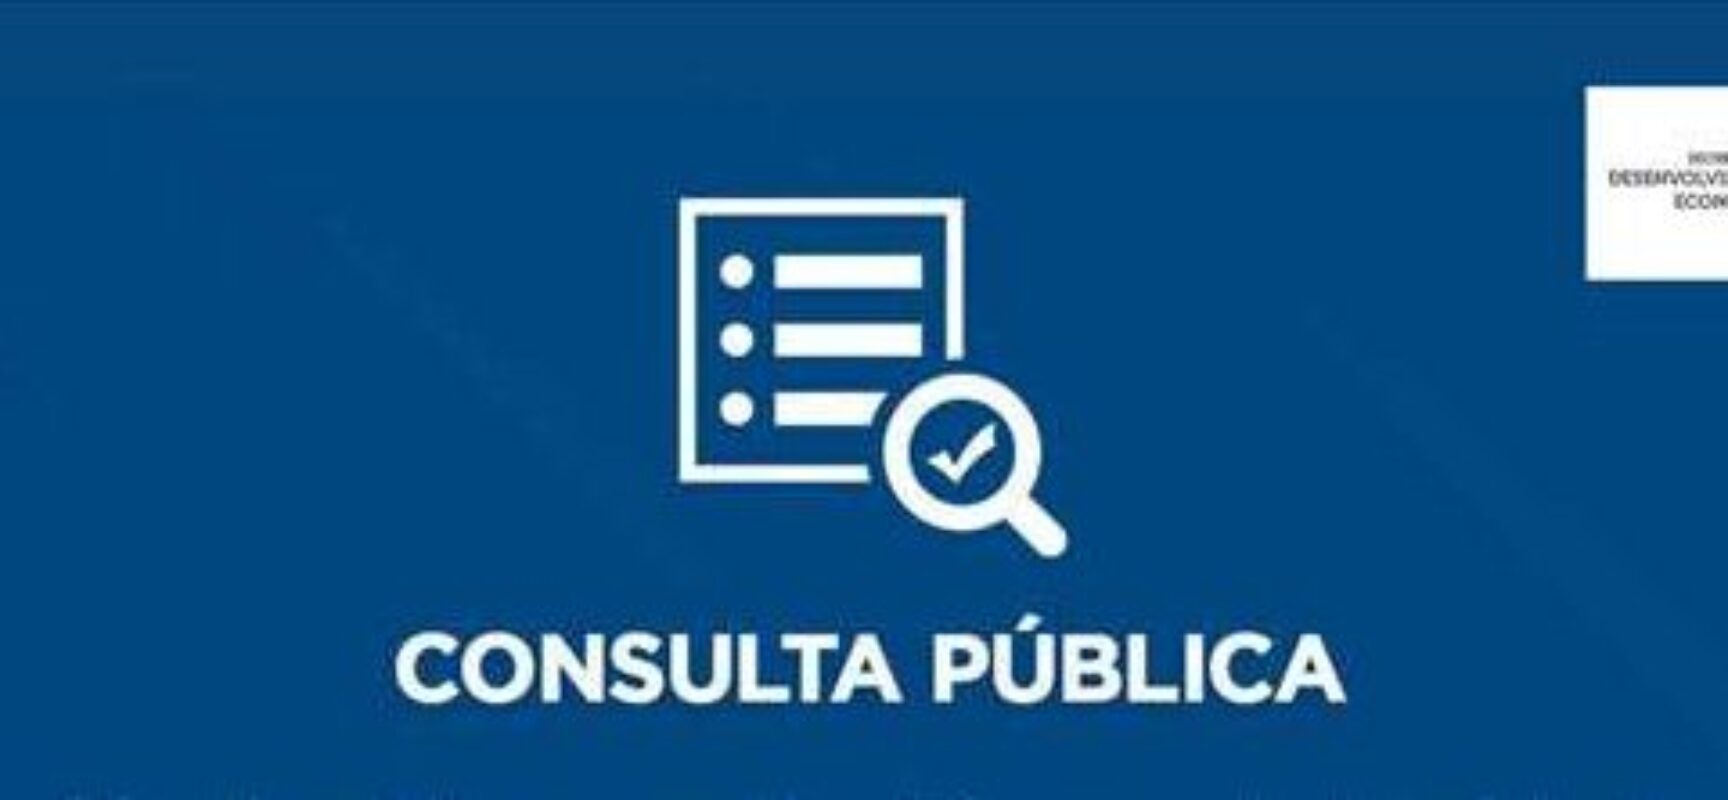 Prefeitura de Ilhéus abre consulta pública para revisão da Lei de Uso e Ocupação de Solo